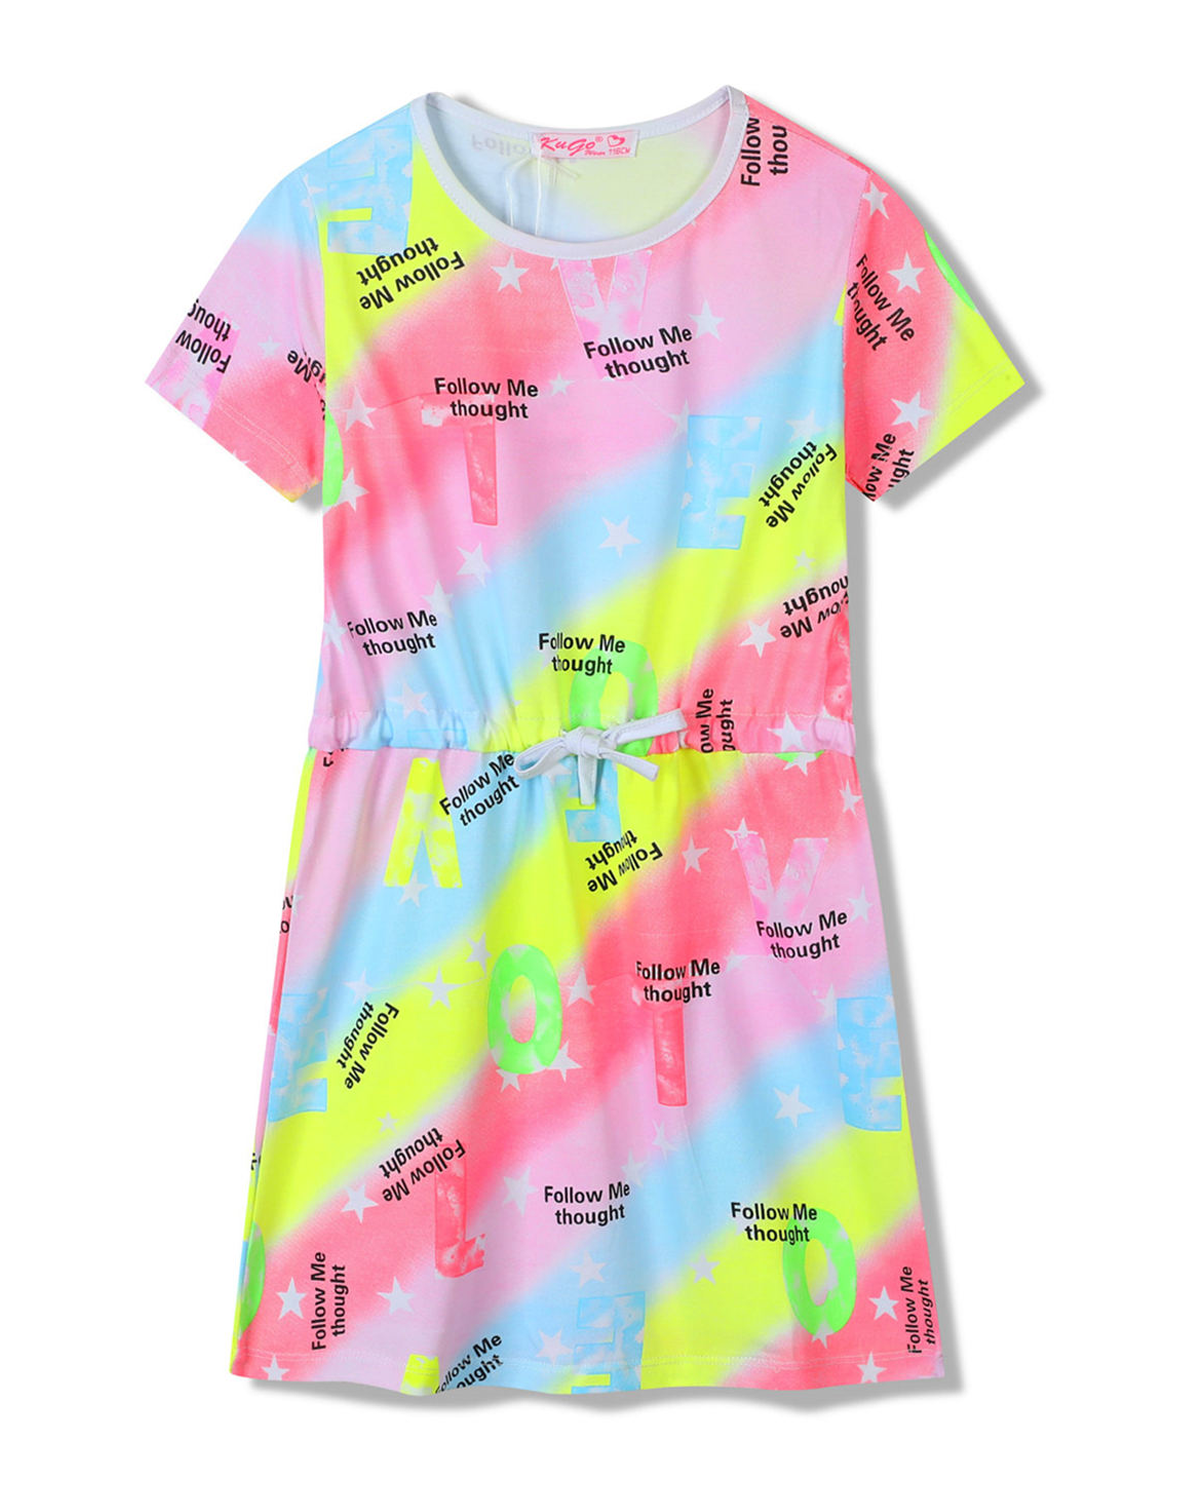 Dívčí šaty - KUGO SH3518, mix barev / fialkový lem Barva: Mix barev, Velikost: 134